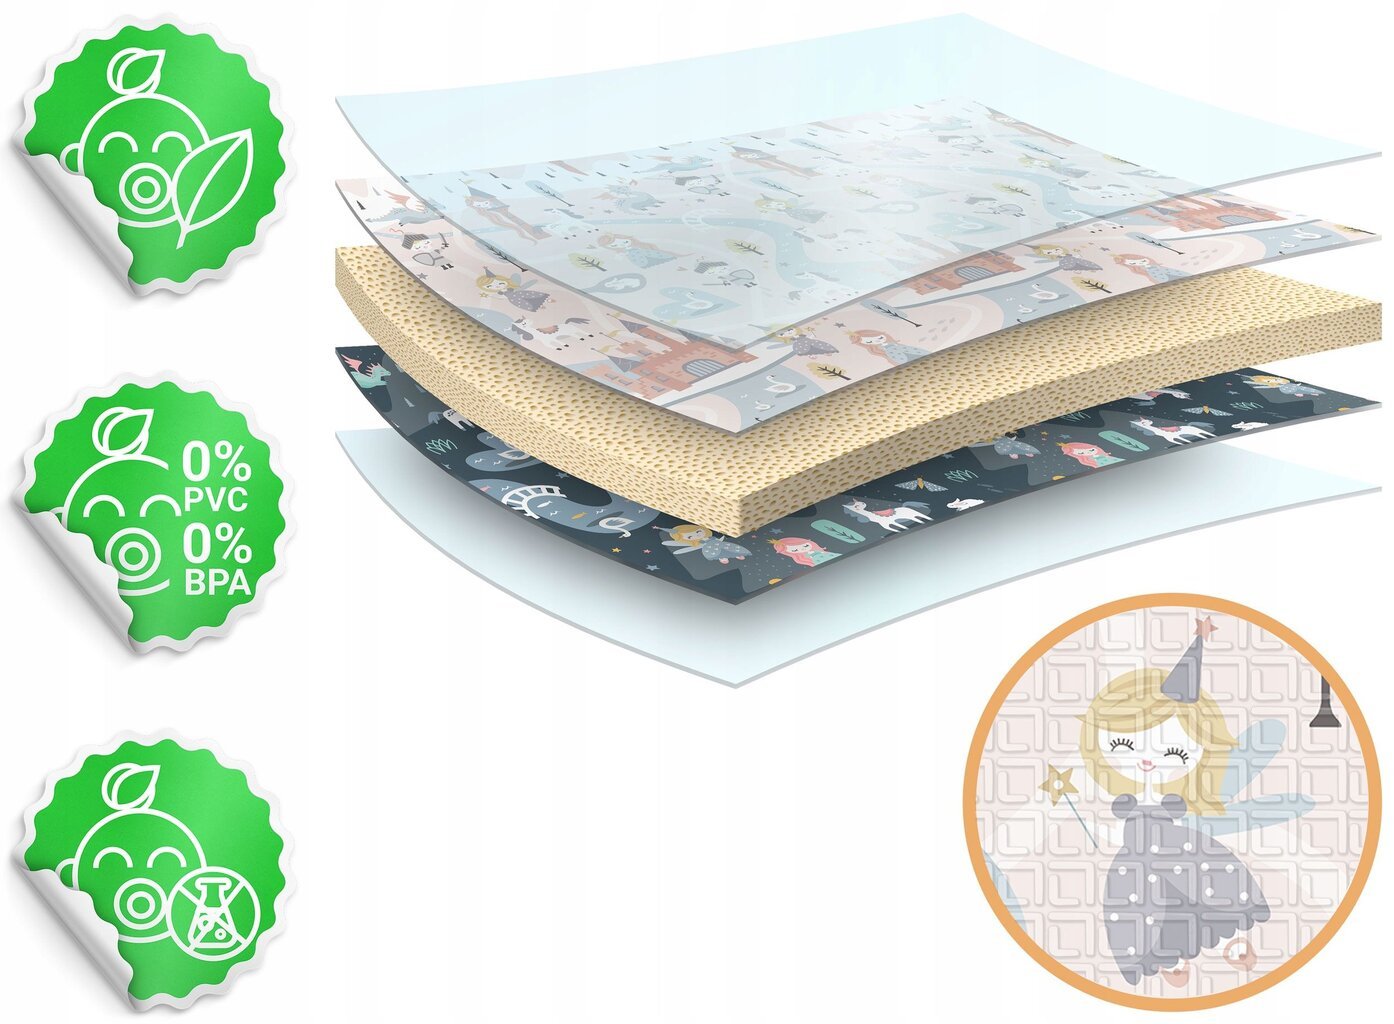 Dvipusis žaidimų kilimėlis Nukido, 200x180cm kaina ir informacija | Lavinimo kilimėliai | pigu.lt